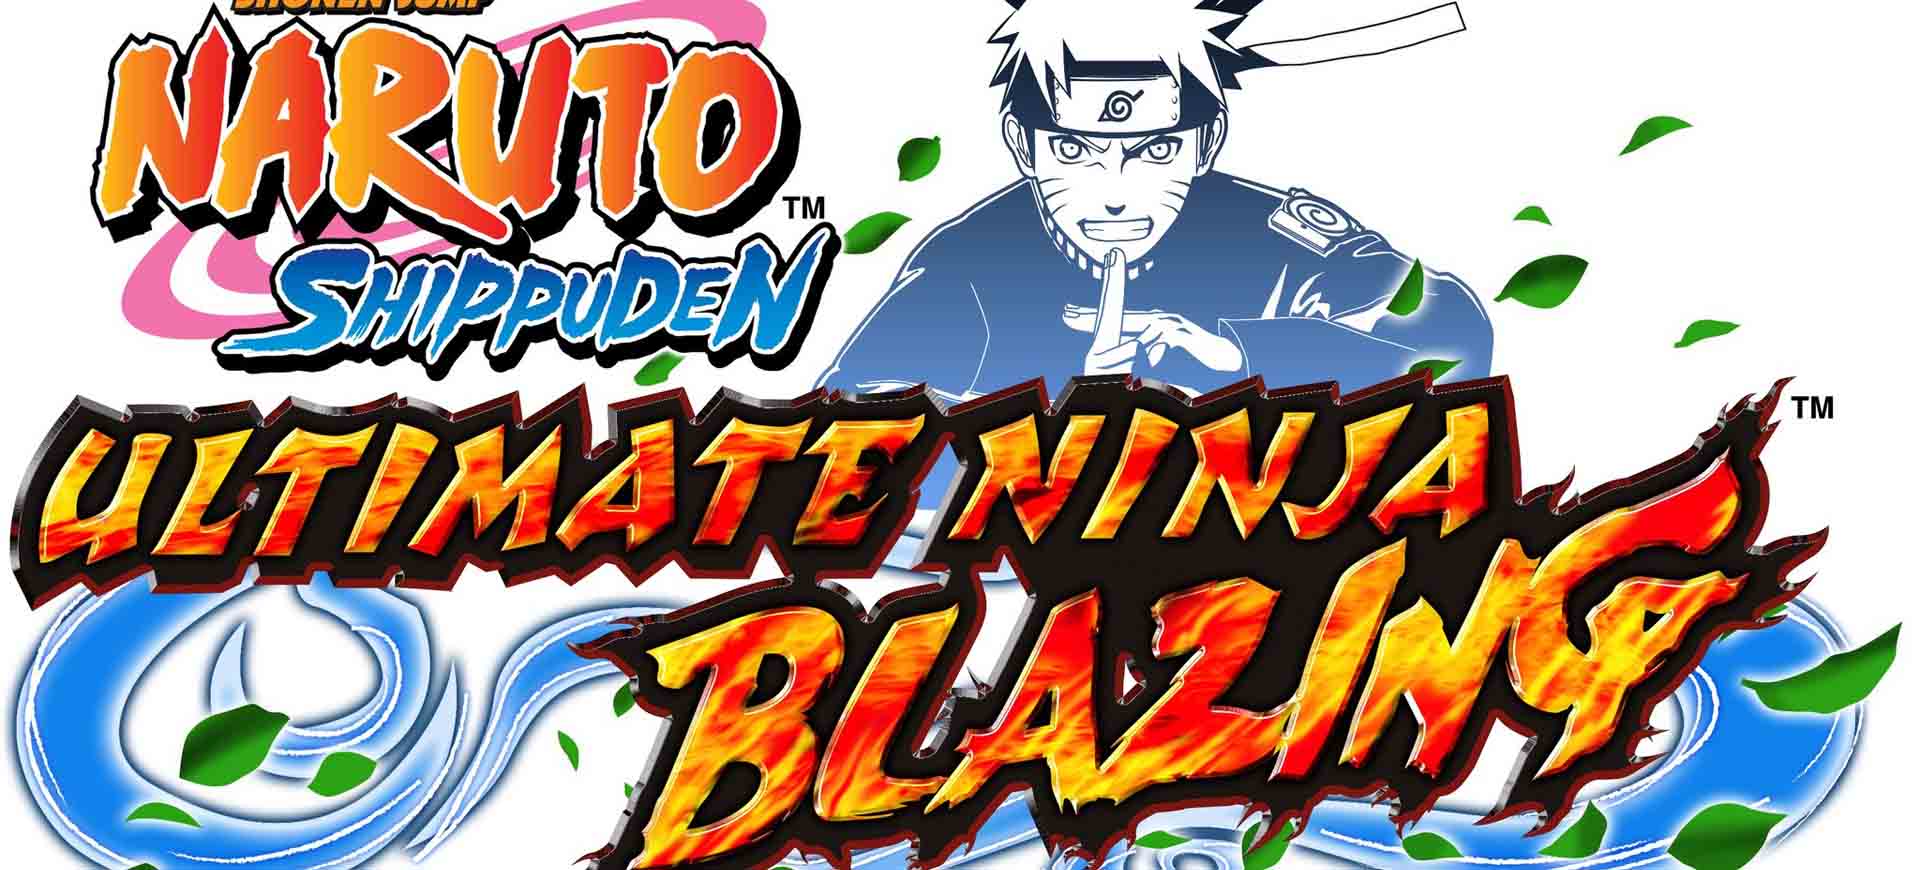 Naruto Shippuden: Ultimate Ninja Blazing chính thức cho đăng kí trước – Tin Game Mobile